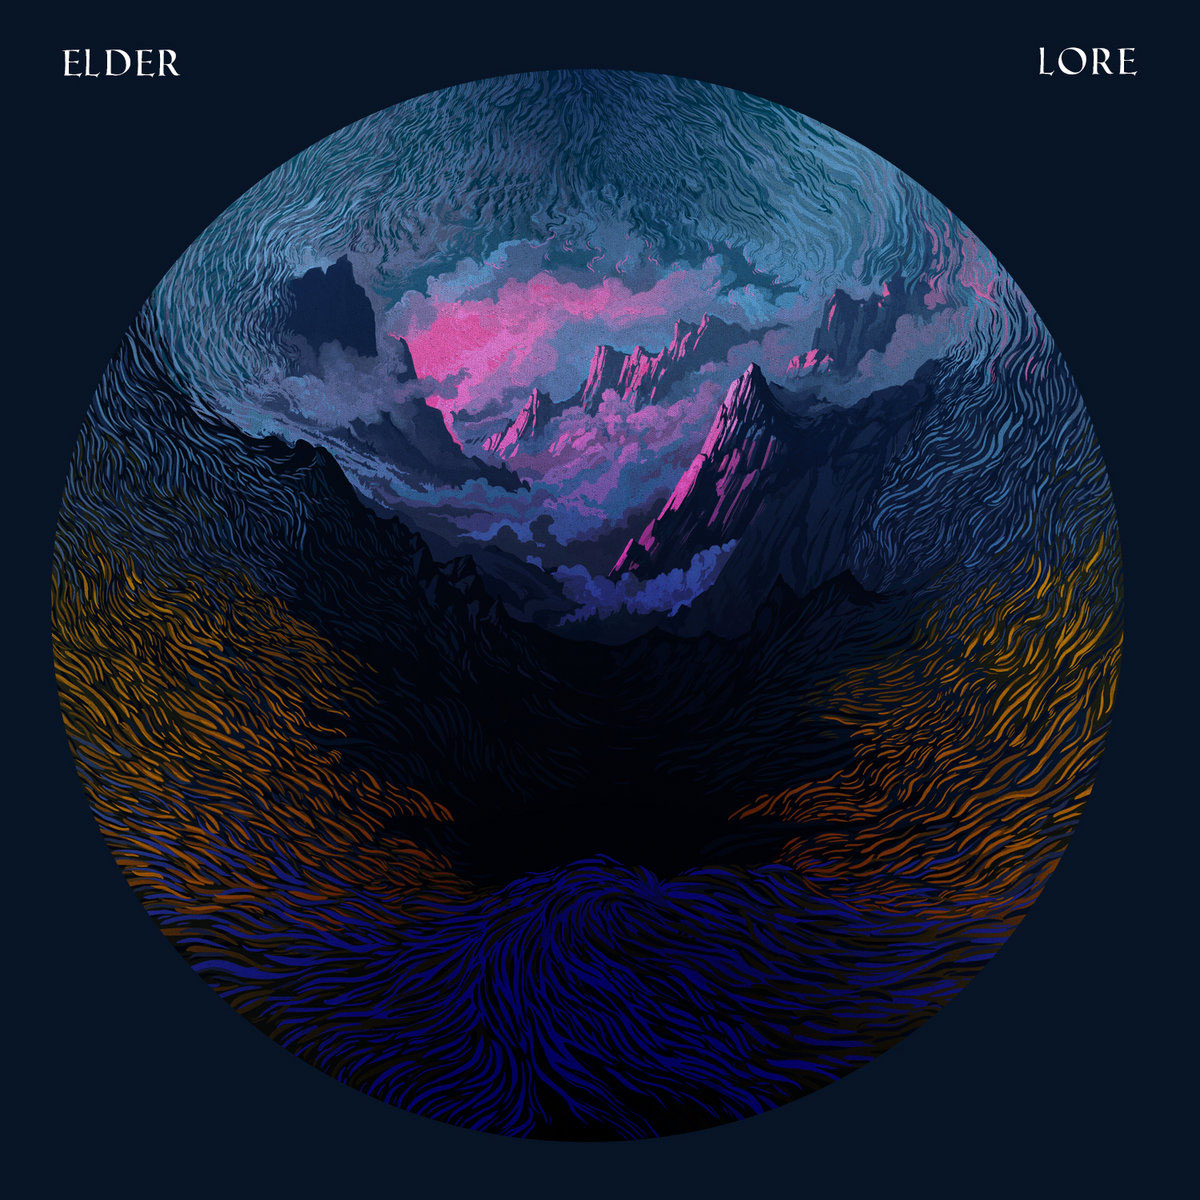 Lore by Elder